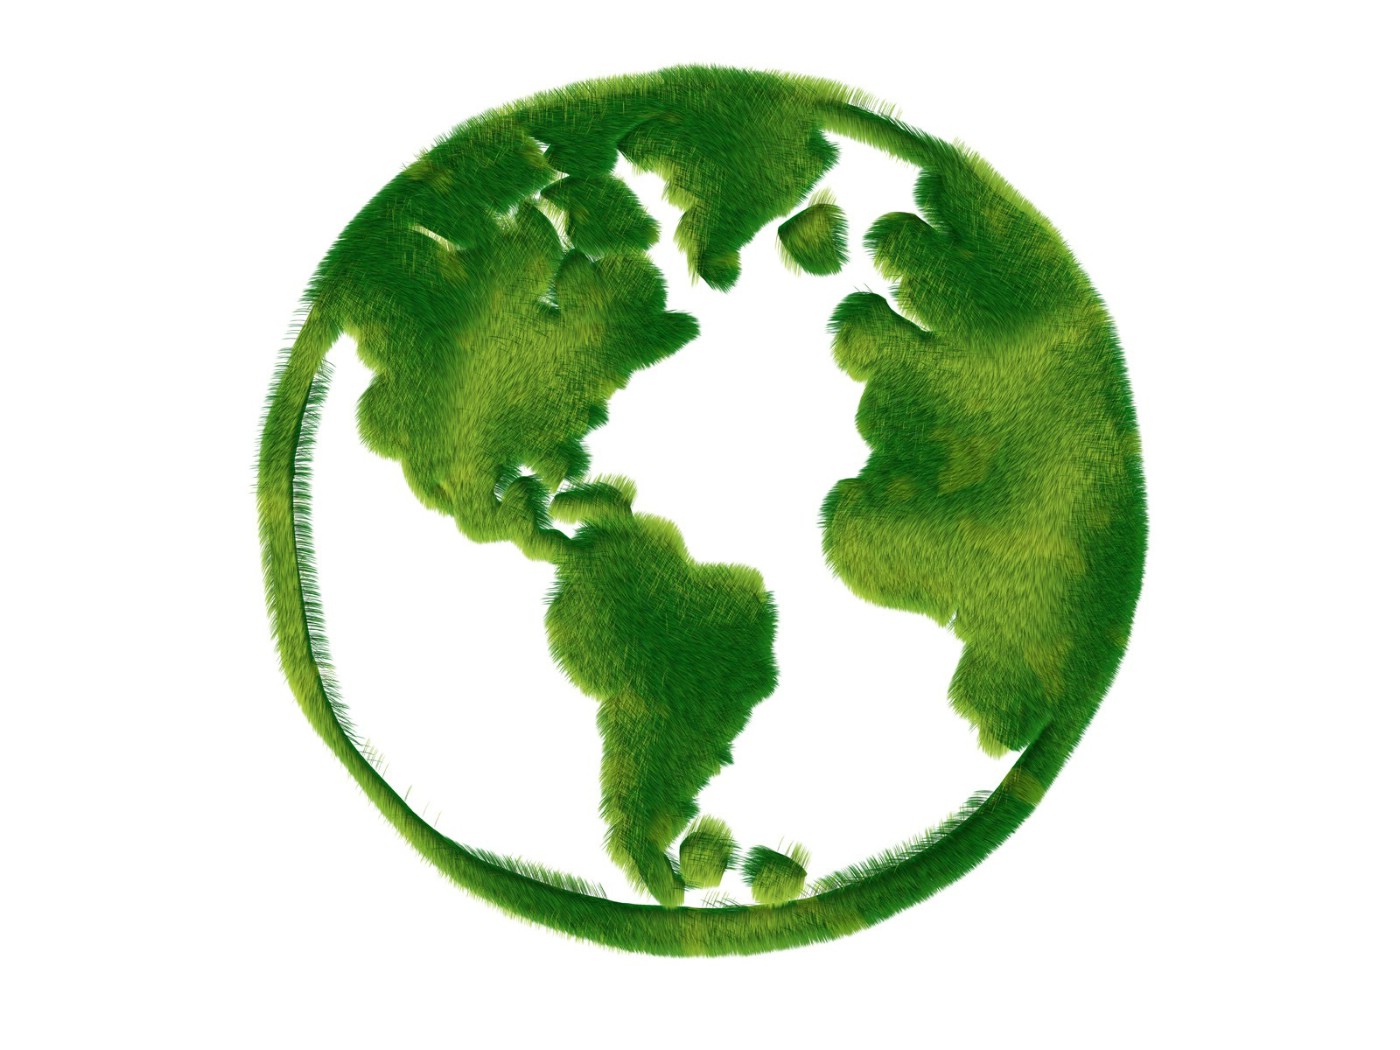 壁纸1400x1050 绿色地球 绿色和平环保标志 1920 1200壁纸 绿色和平环保标志-循环利用壁纸 绿色和平环保标志-循环利用图片 绿色和平环保标志-循环利用素材 插画壁纸 插画图库 插画图片素材桌面壁纸